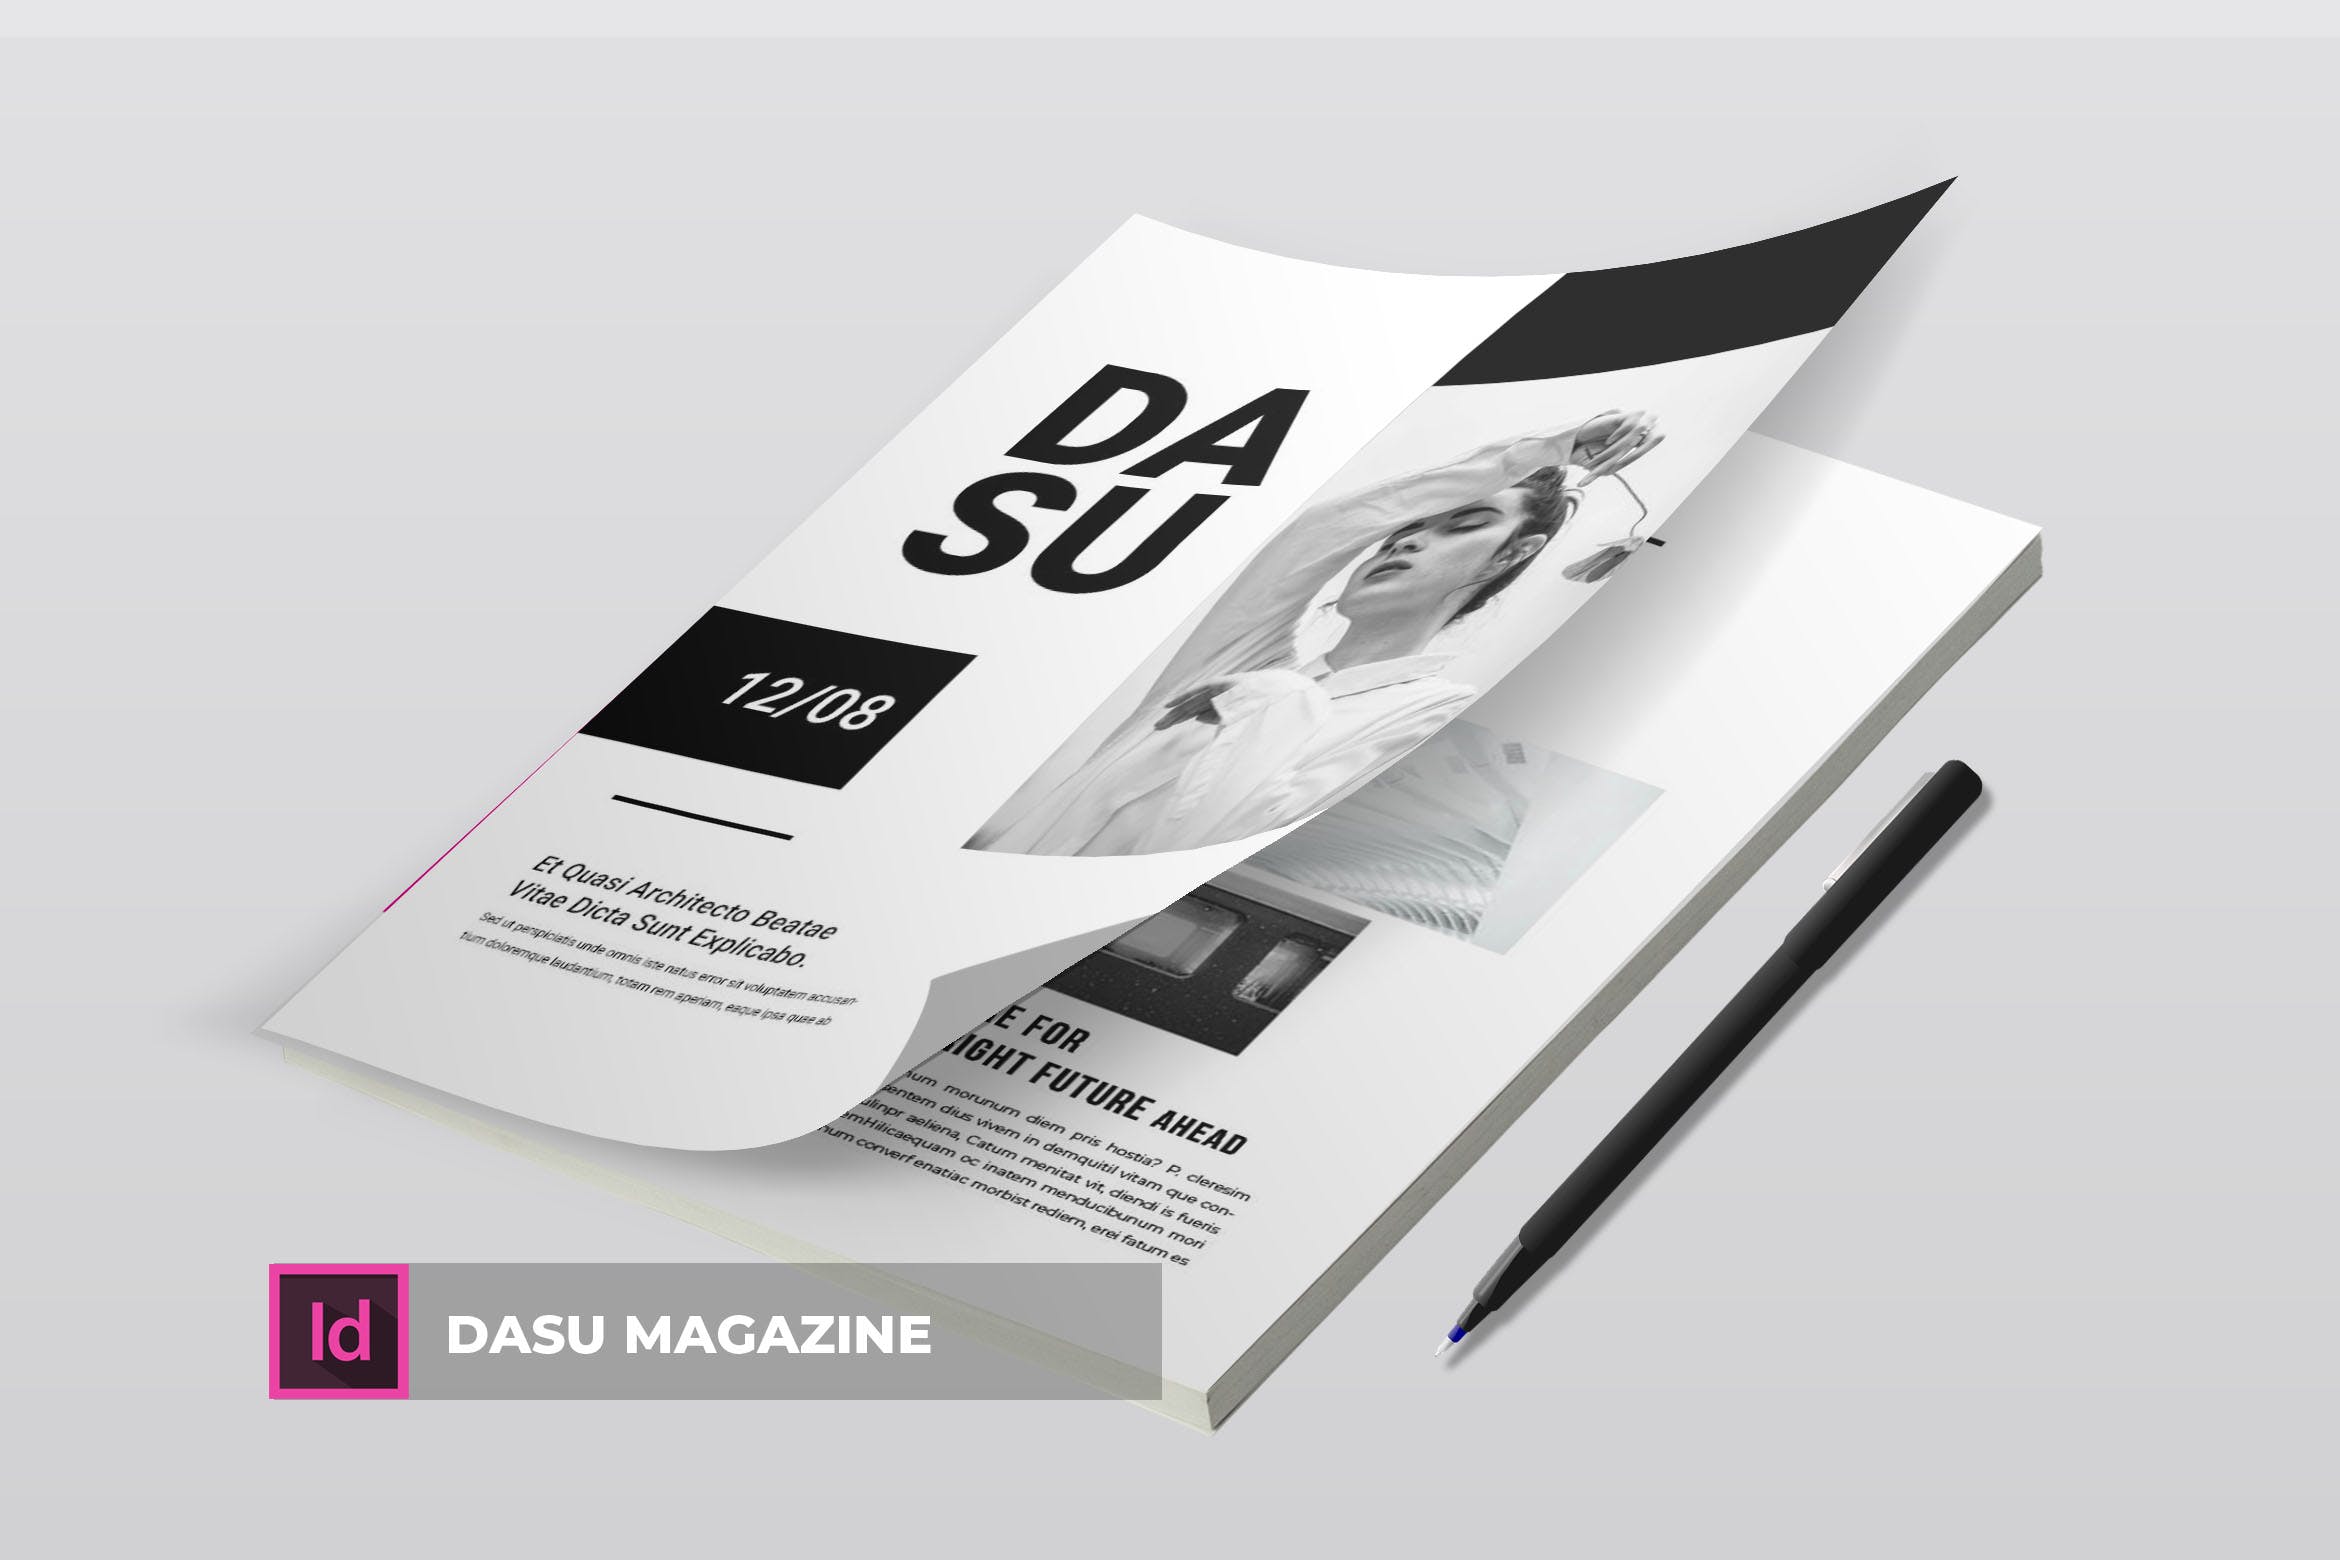 摄影艺术/时装设计主题16设计网精选杂志排版设计模板 Dasu | Magazine Template插图